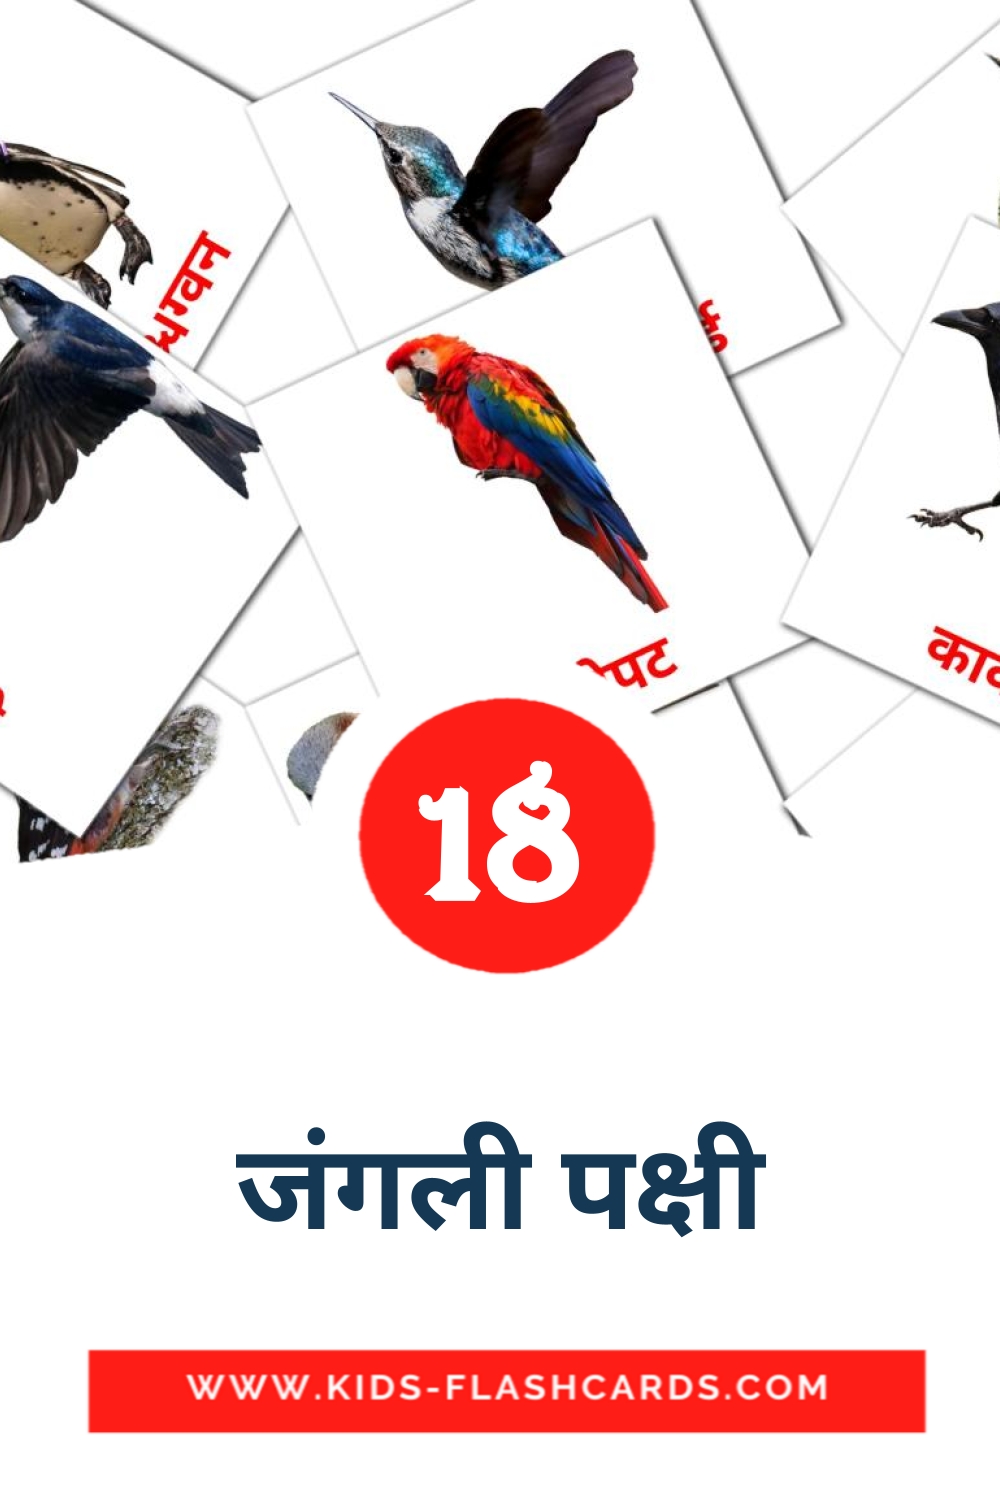 18 जंगली पक्षी fotokaarten voor kleuters in het marathi